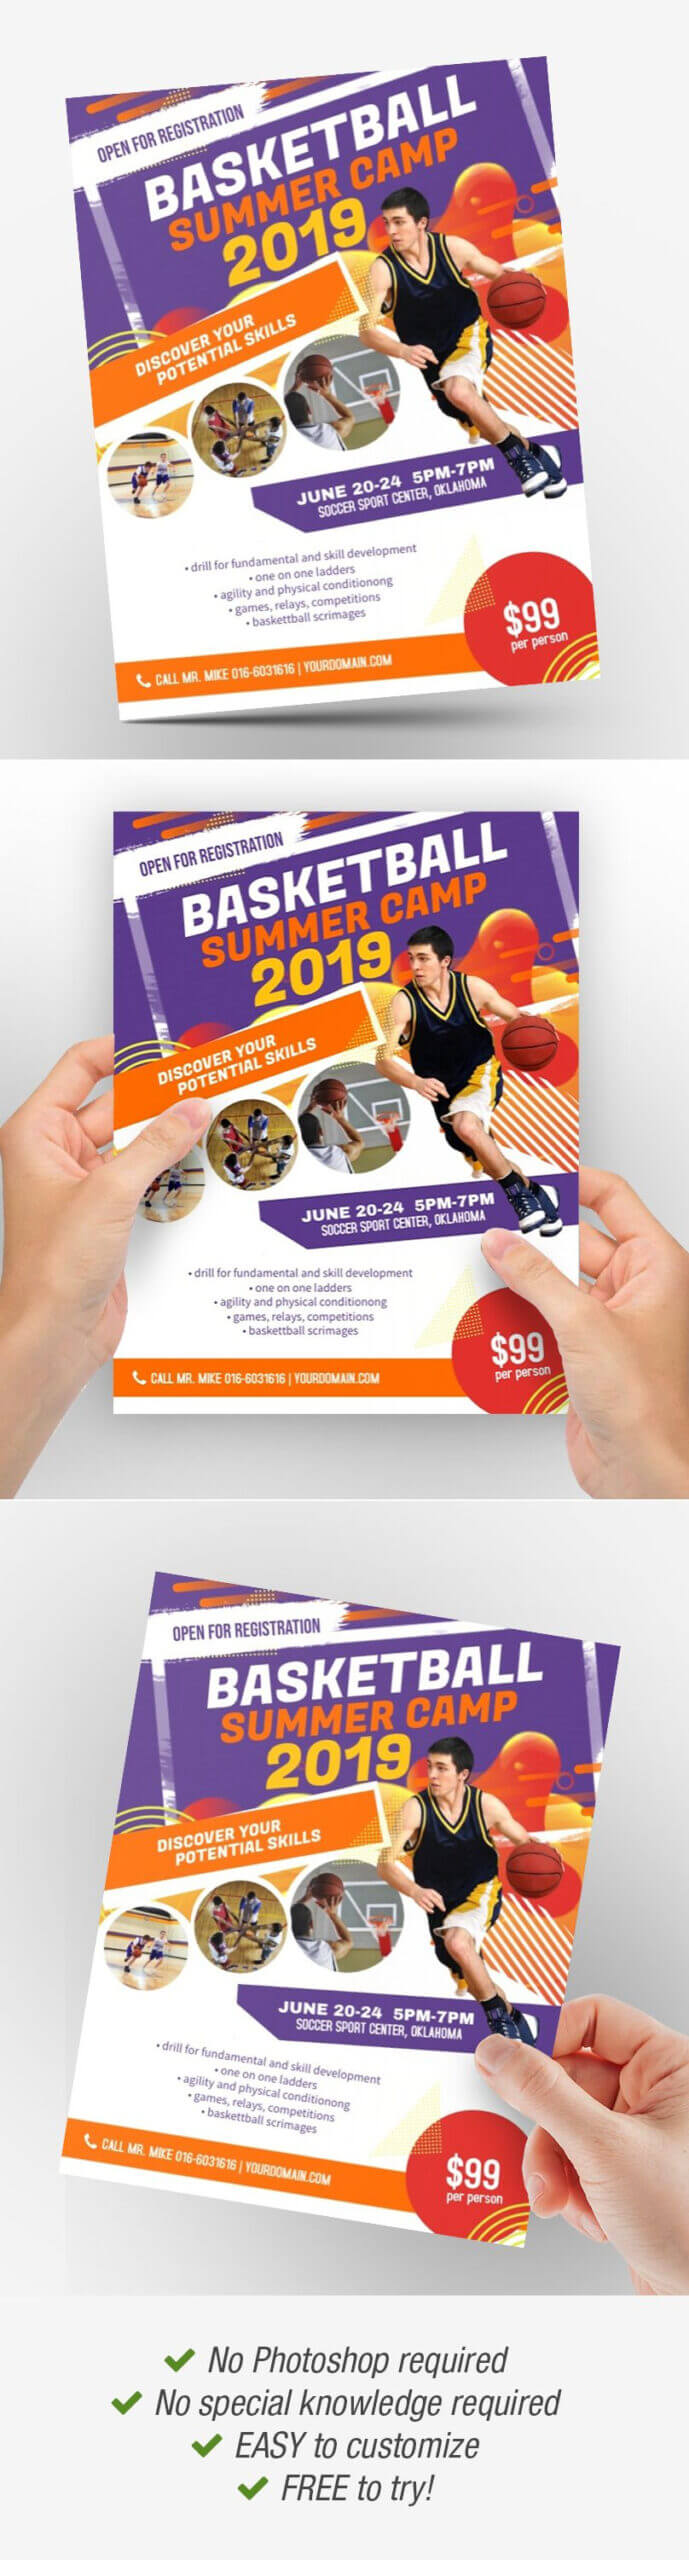 Basketball Camp Basketball Camp Poster Basketball Camp Regarding Basketball Camp Brochure Template